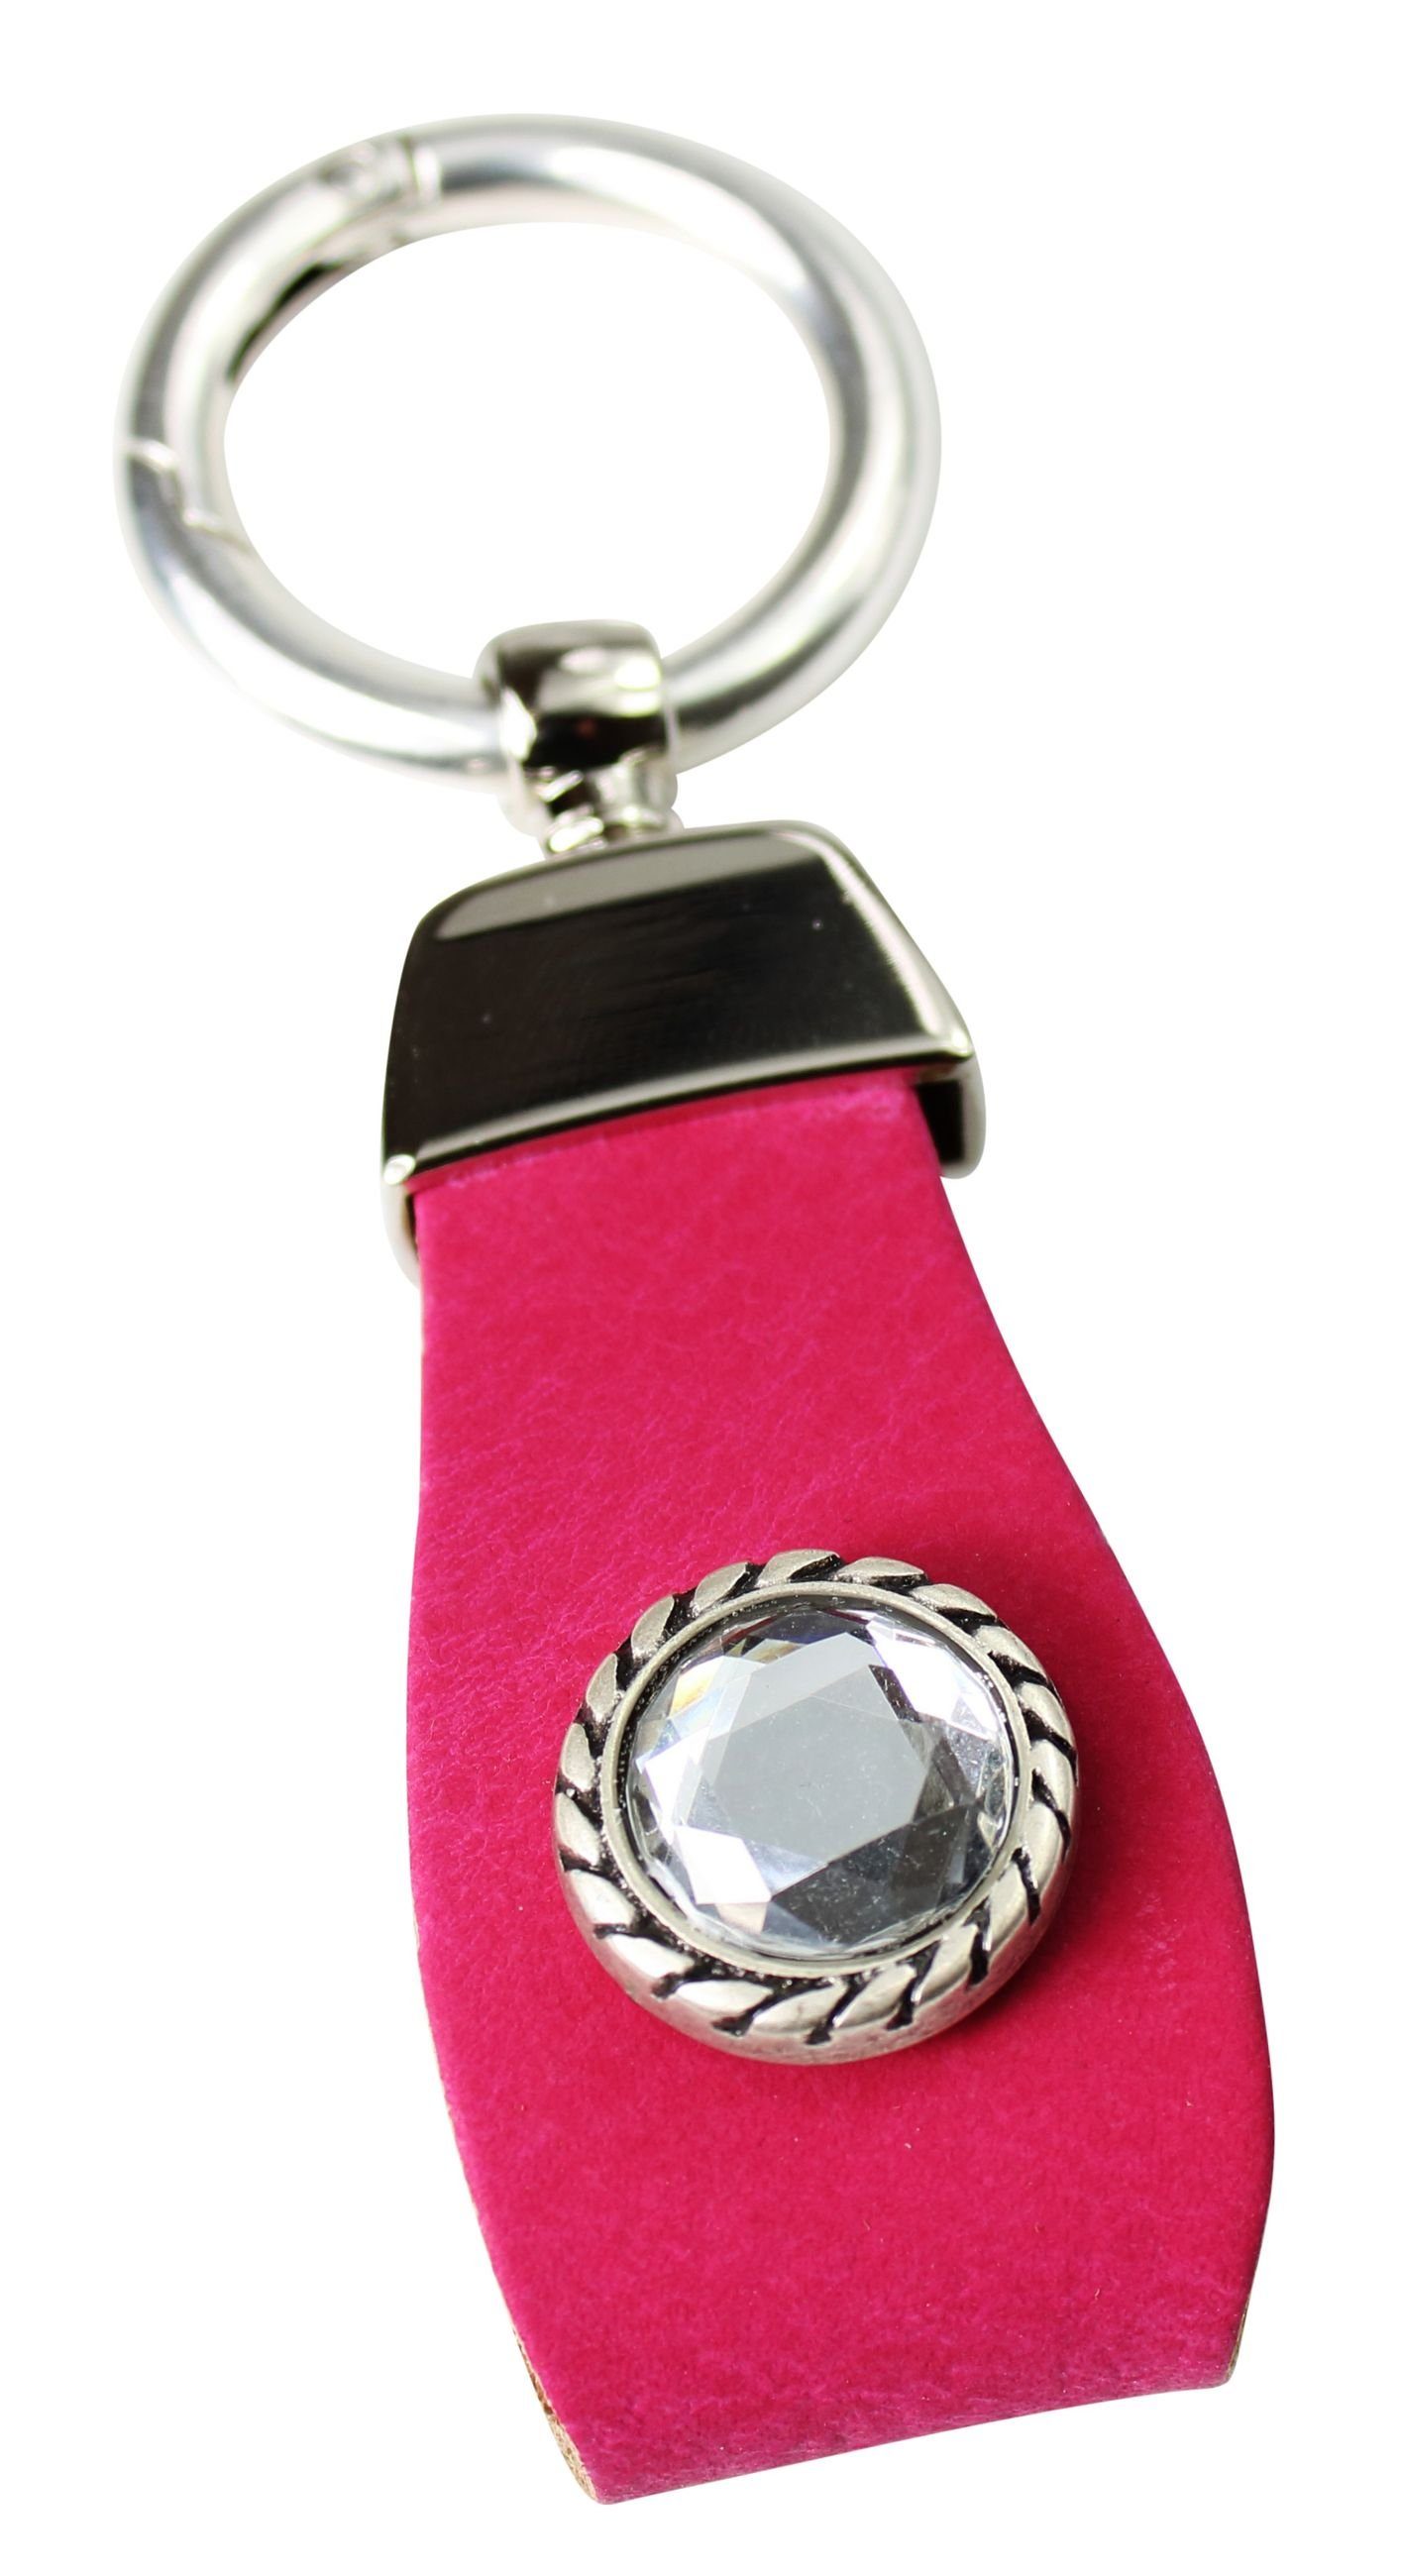 FRONHOFER Schlüsselanhänger 18881, Schlüsselanhänger aus Leder mit Strass Zierteil in tollen Farben Pink